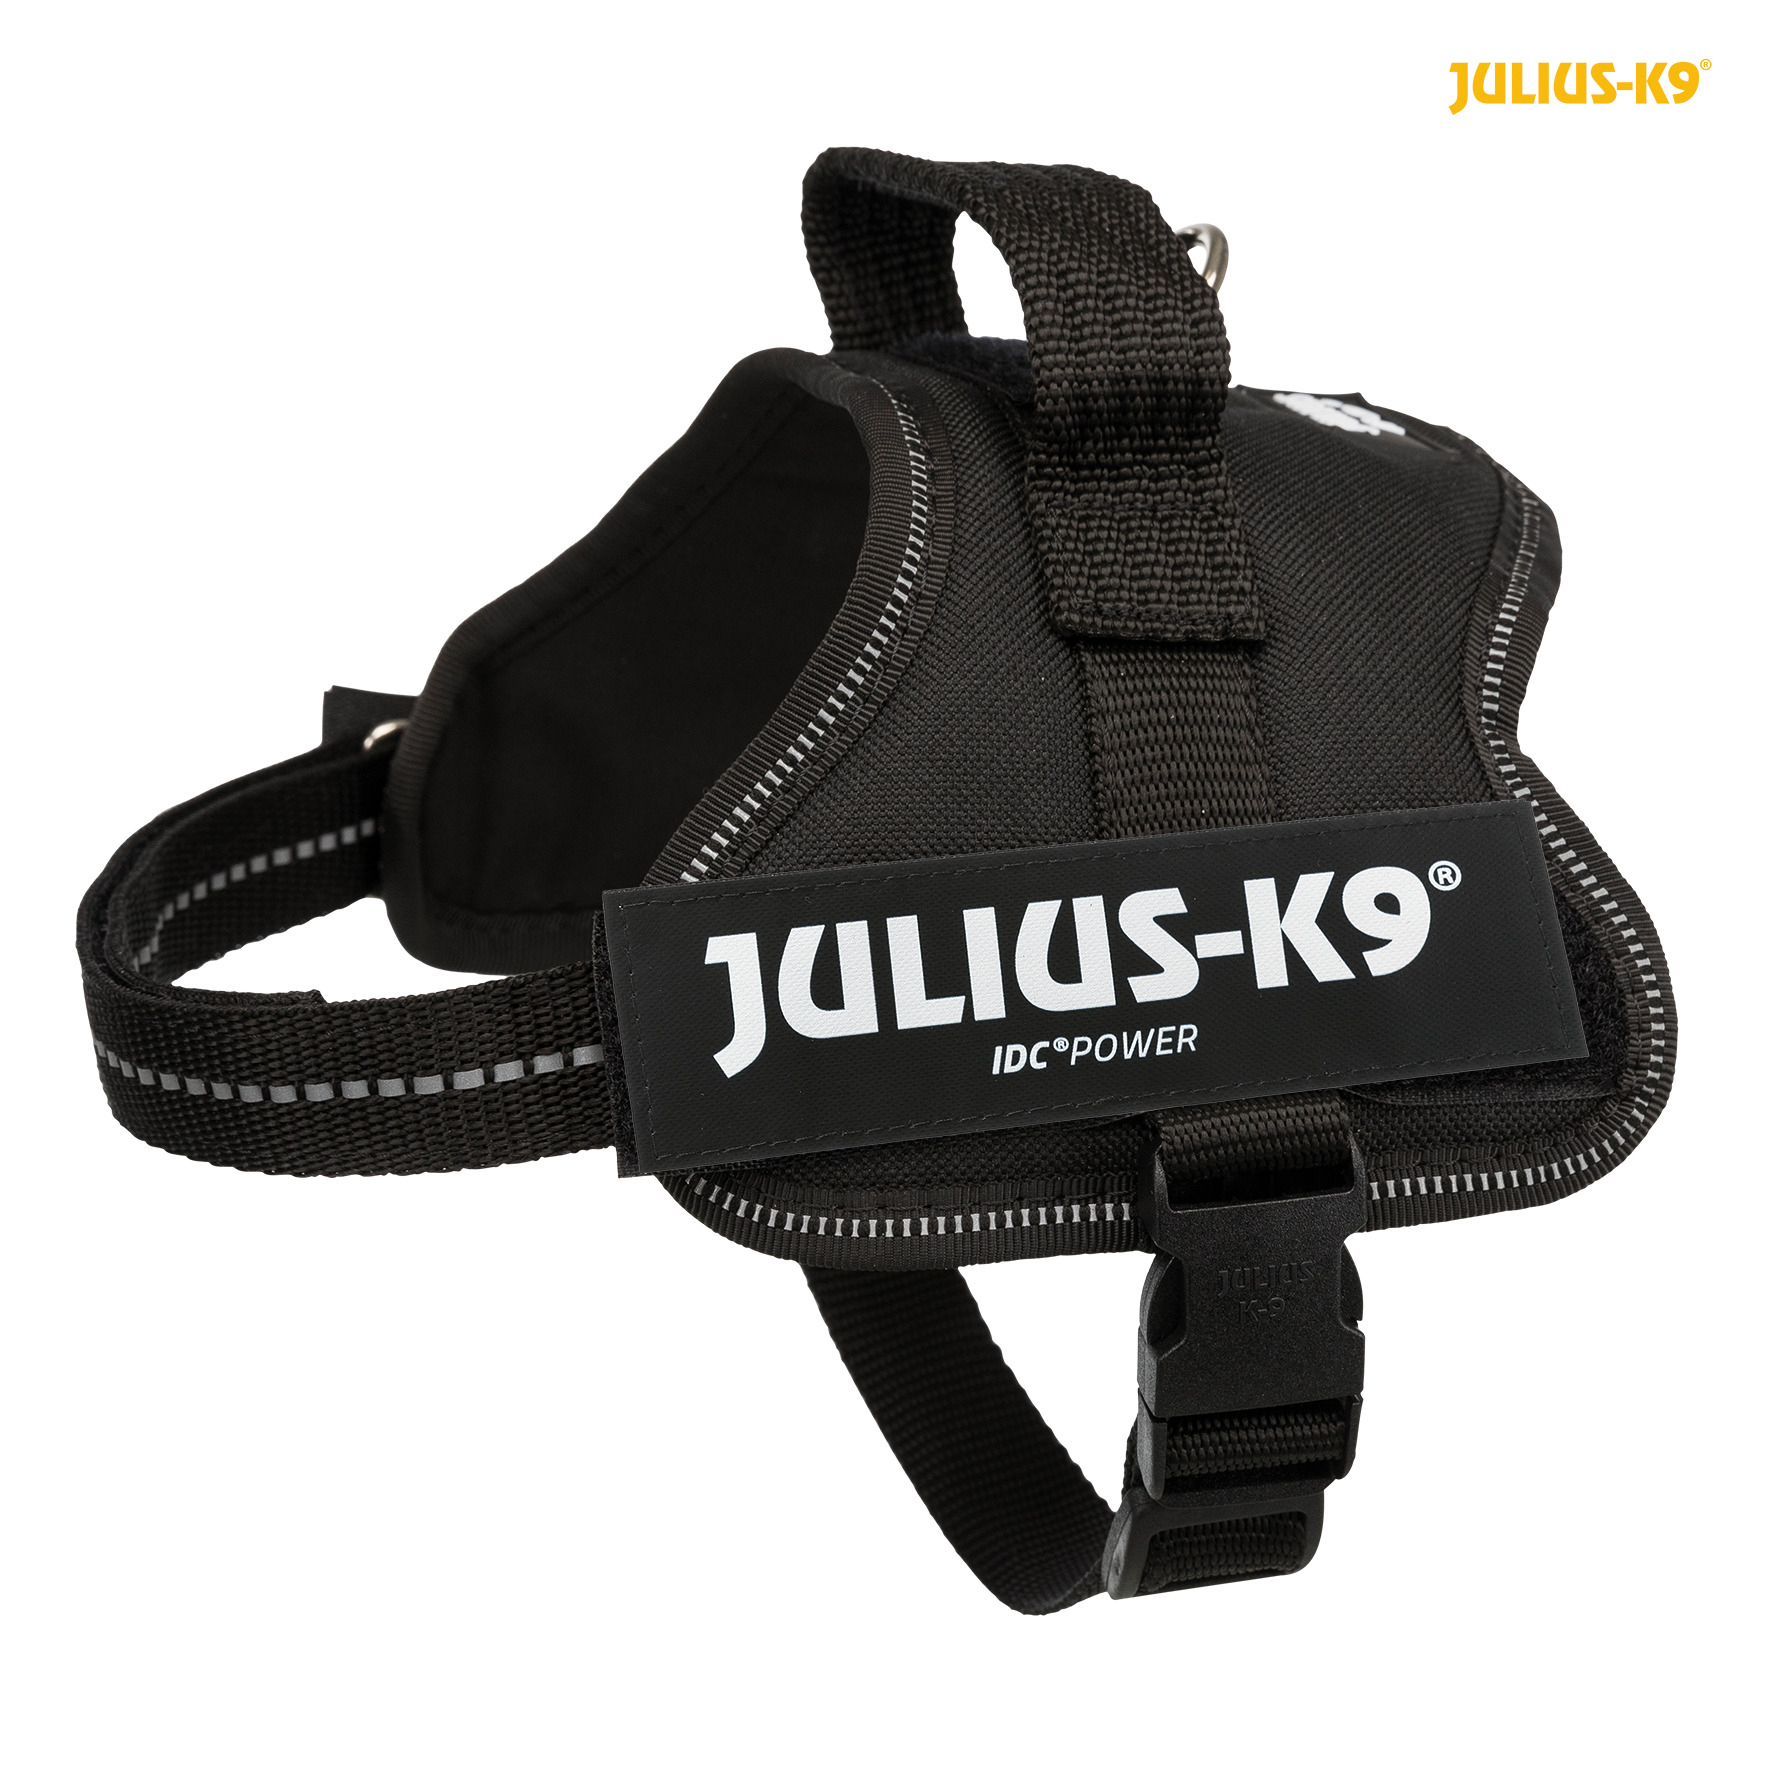 Geschirr Power Julius-K9 in schwarz